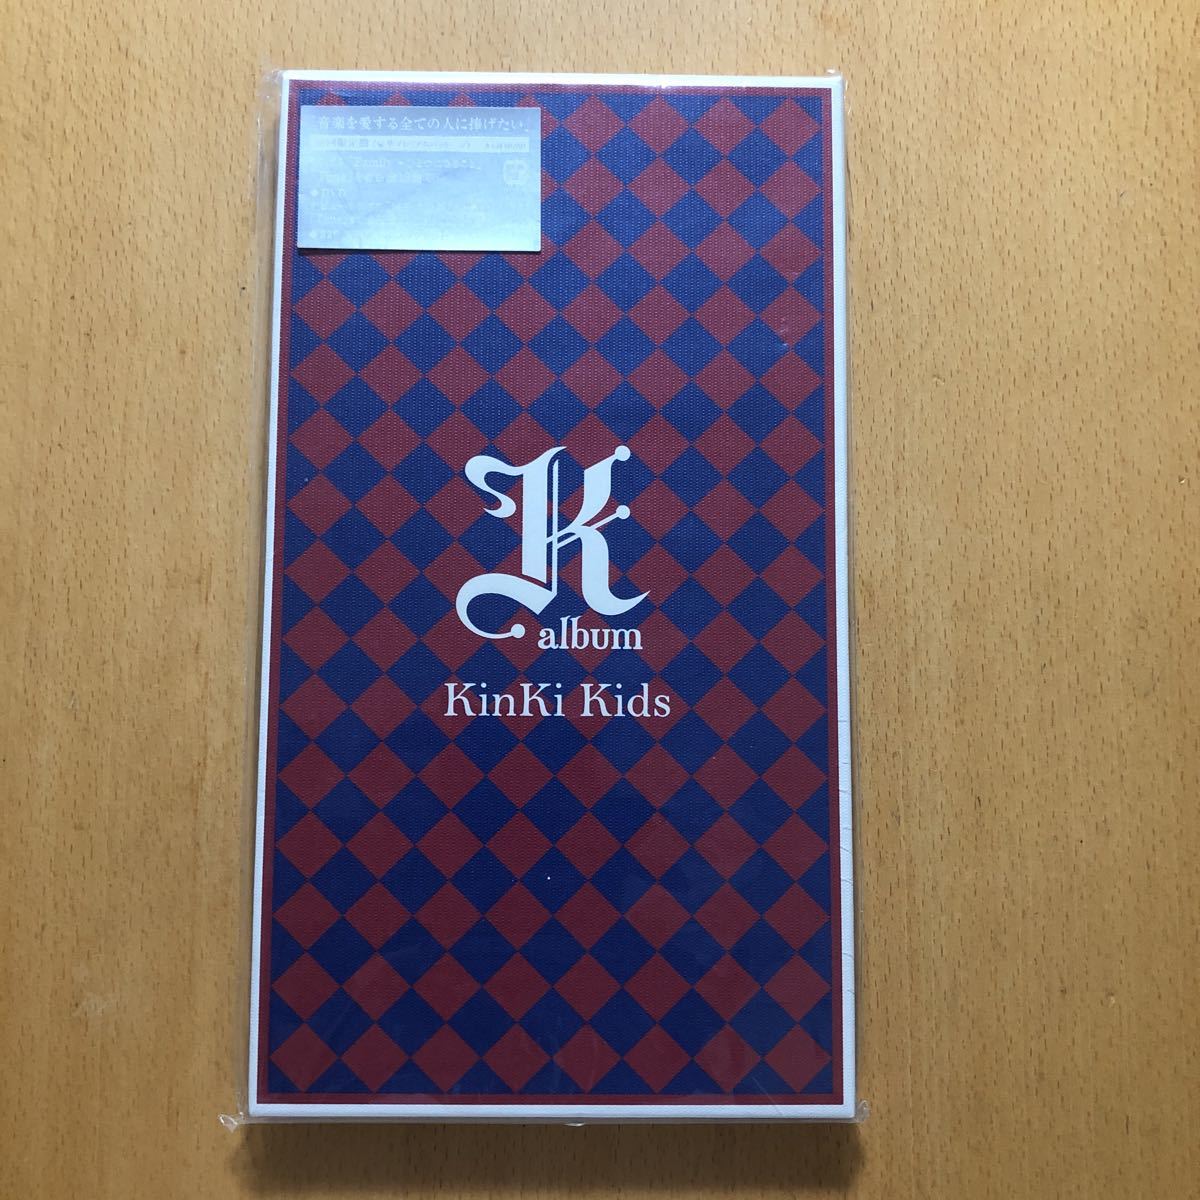  бесплатная доставка *KinKi Kids[K album] первый раз ограничение запись CD+DVD156 минут сбор *PV сборник сбор * новый товар нераспечатанный товар *171